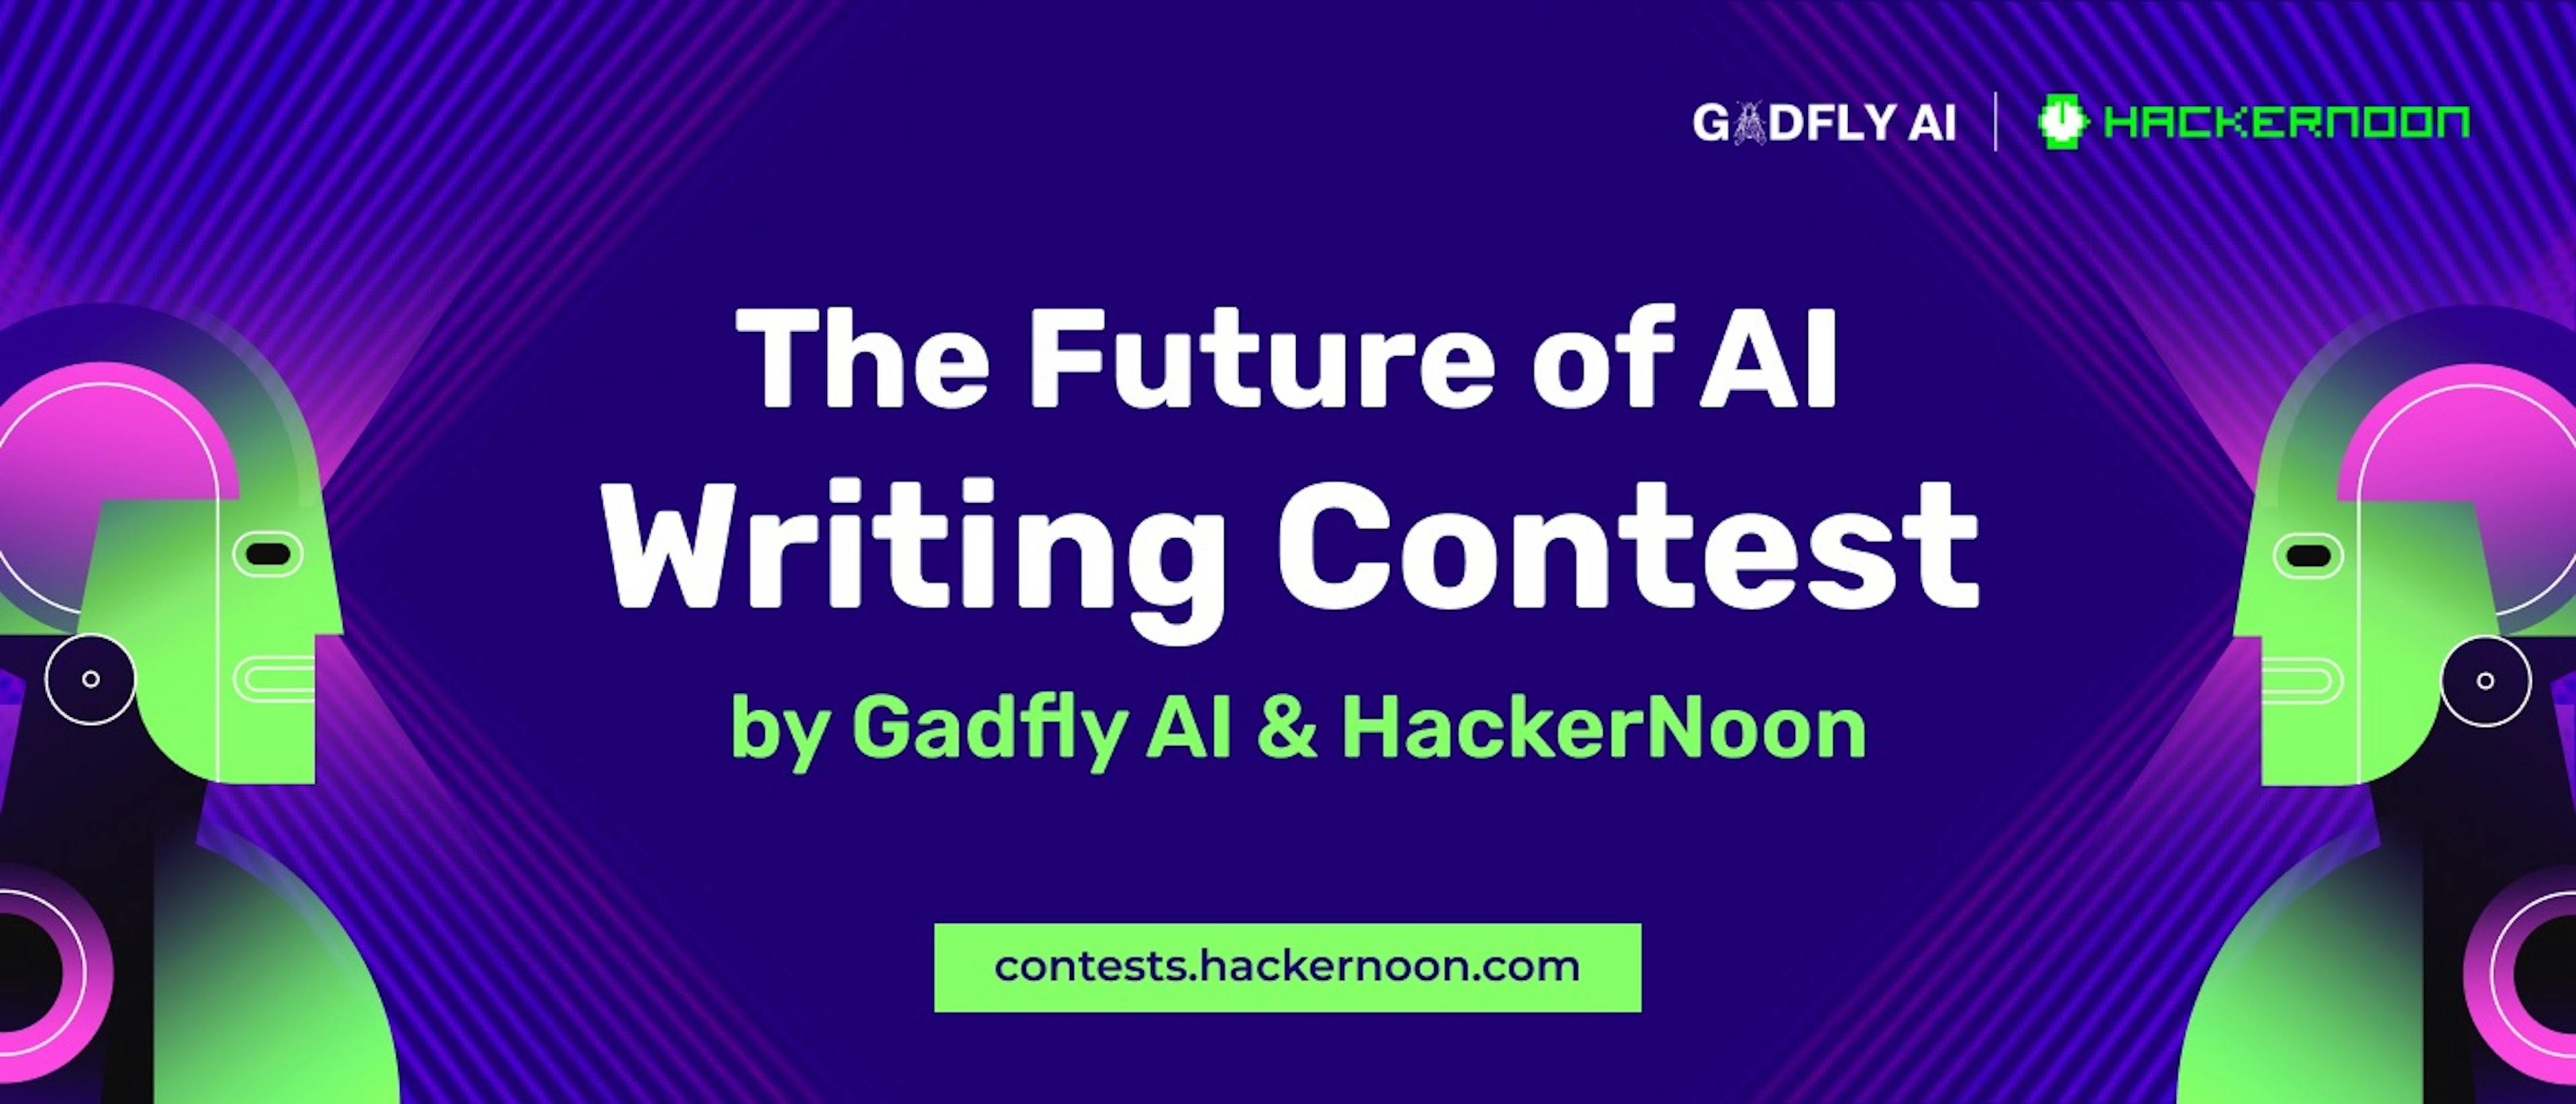 featured image - Concours d'écriture sur l'avenir de l'IA par Gadfly AI